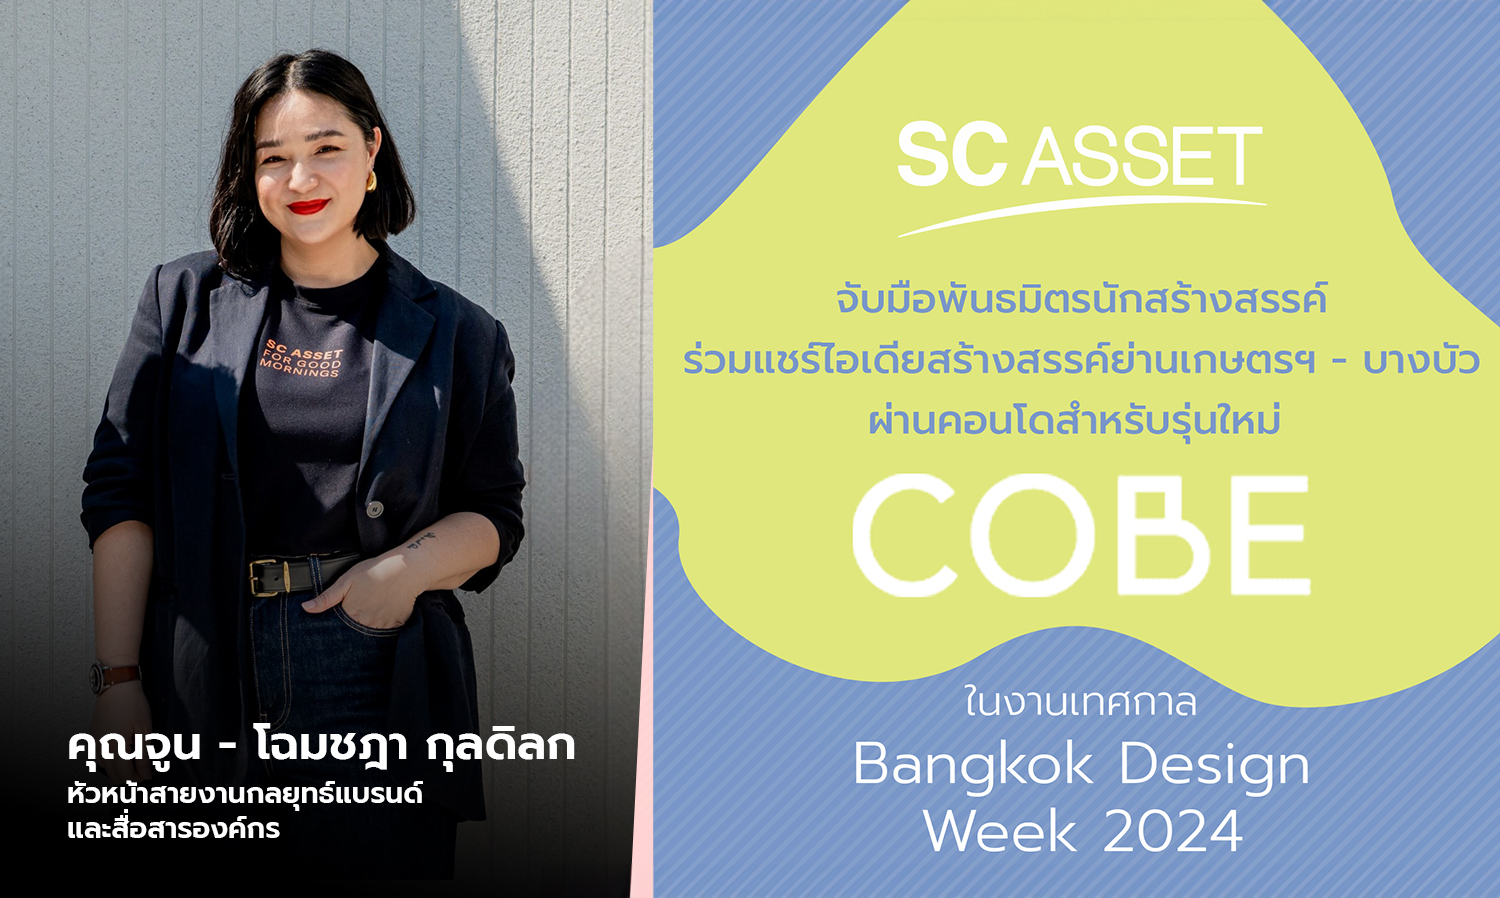 SC Asset จับมือพันธมิตรนักสร้างสรรค์ ร่วมแชร์ไอเดียสร้างสรรค์ย่านเกษตรฯ - บางบัว ผ่านคอนโดสำหรับรุ่นใหม่ COBE ในงานเทศกาล Bangkok Design Week 2024